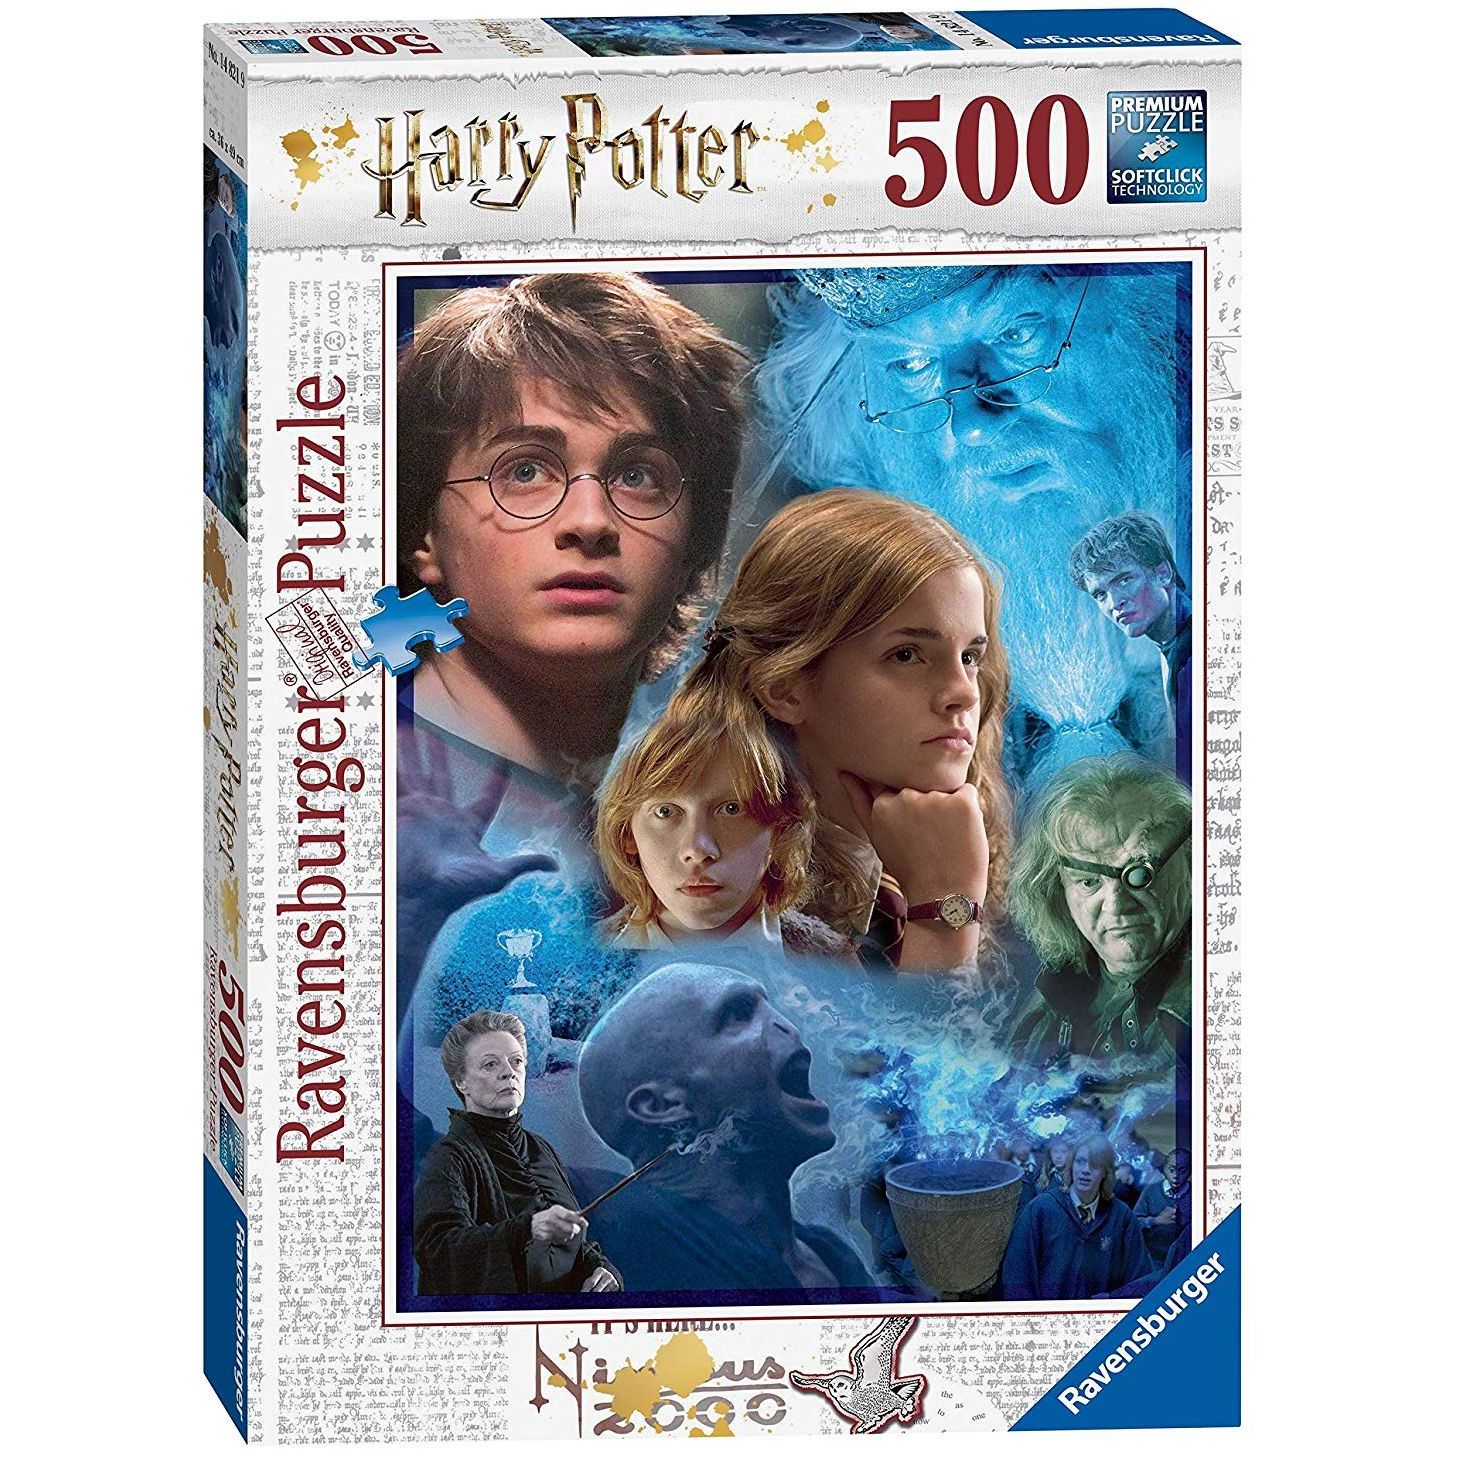 Harry Potter in Hogwarts 500 Pz Ravensburger 14821 4005556148219